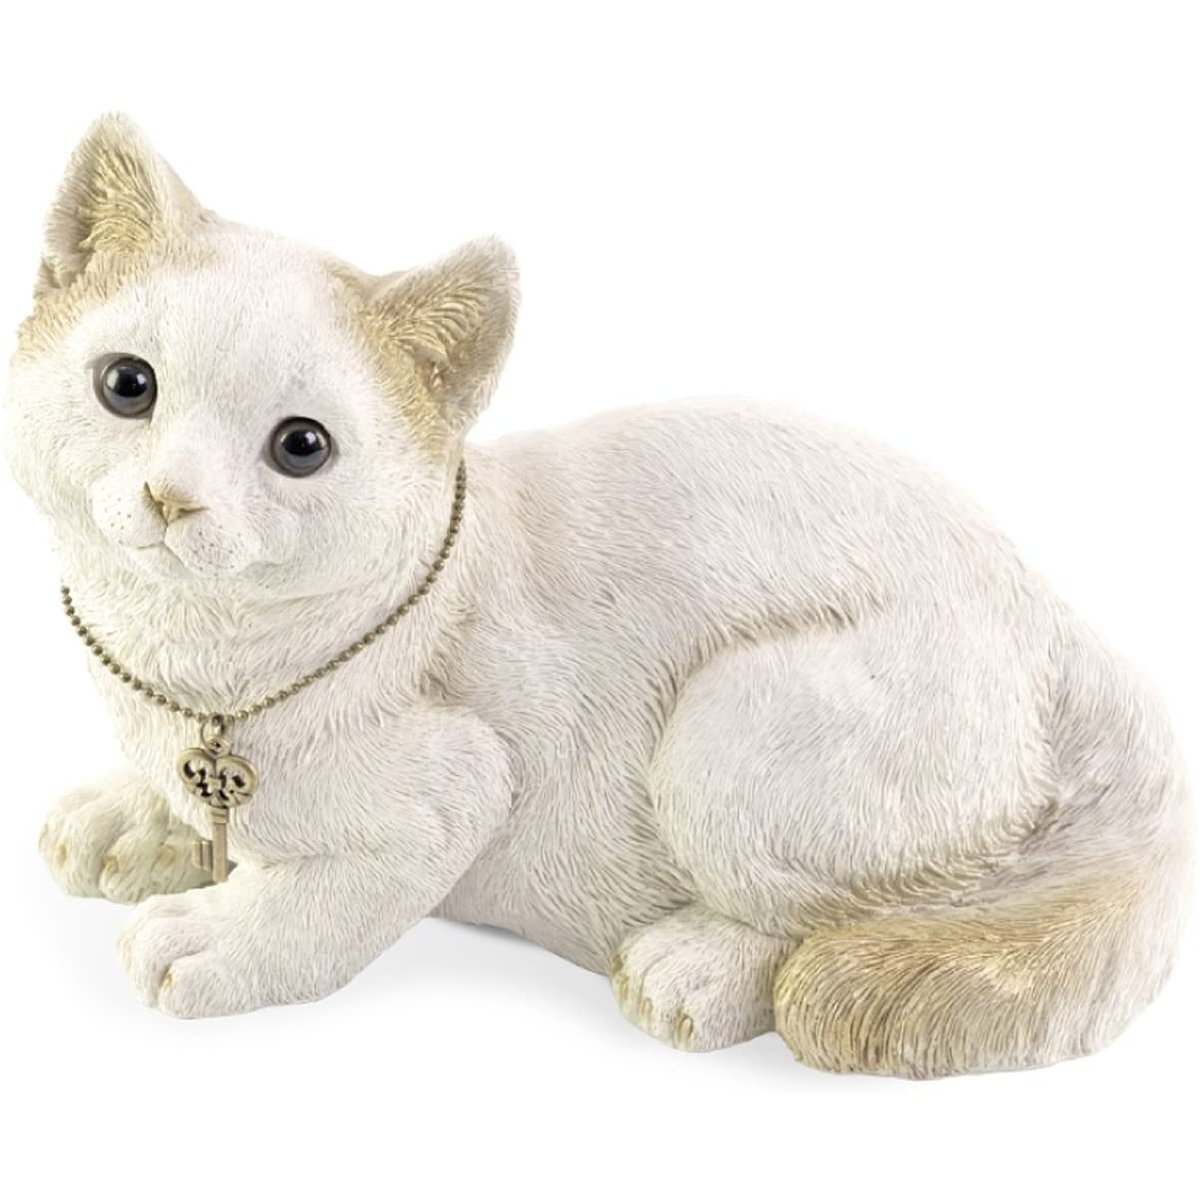 귀여운 원형 저금통 오브제 고양이 높이 16.5 x 9.5 x 12cm 사실적인 질감 열쇠에 매달린 열쇠를 바라보는 고양이의 눈빛이 귀엽습니다, 핸드메이드 아이템, 내부, 잡화, 장식, 물체